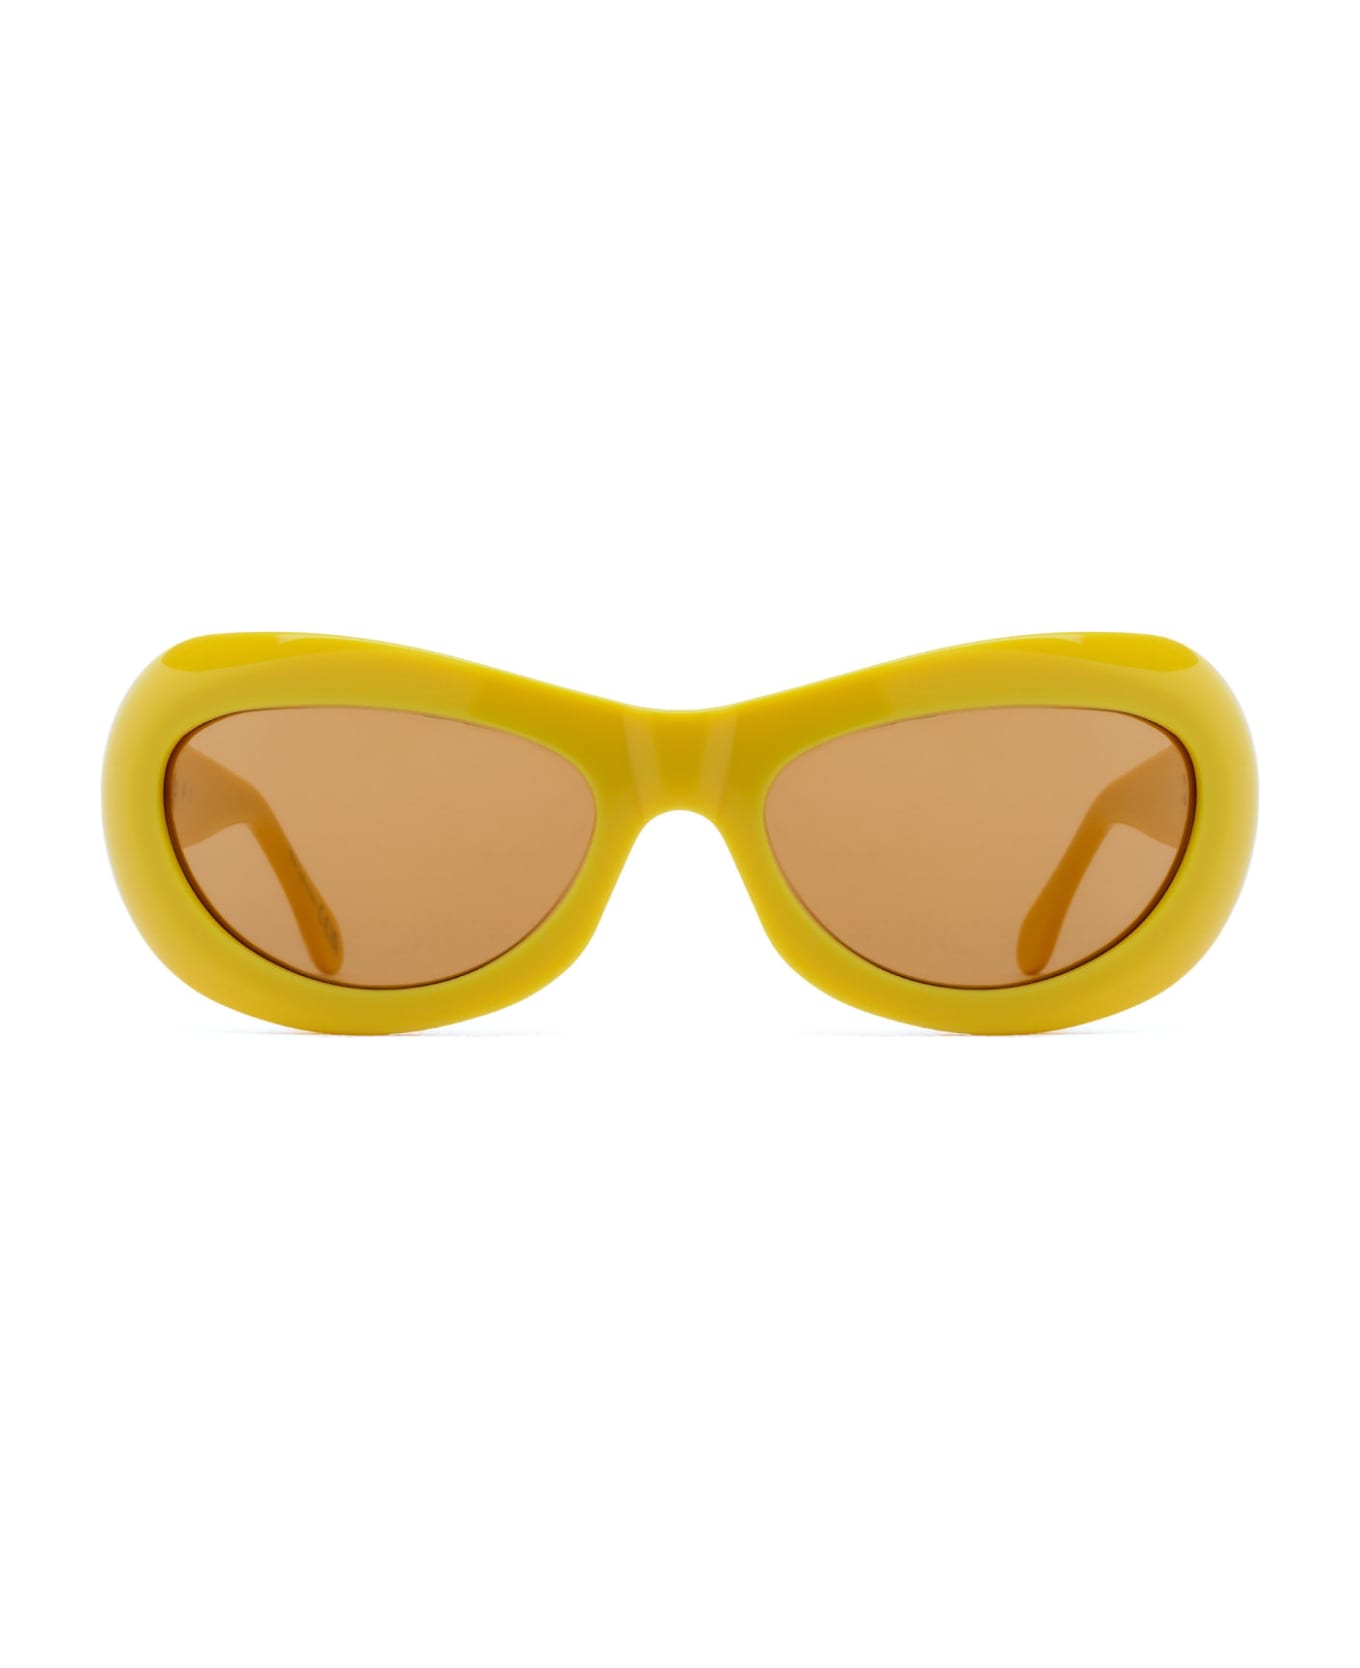 Marni Eyewear Field Of Rushes Yellow Sunglasses - Yellow